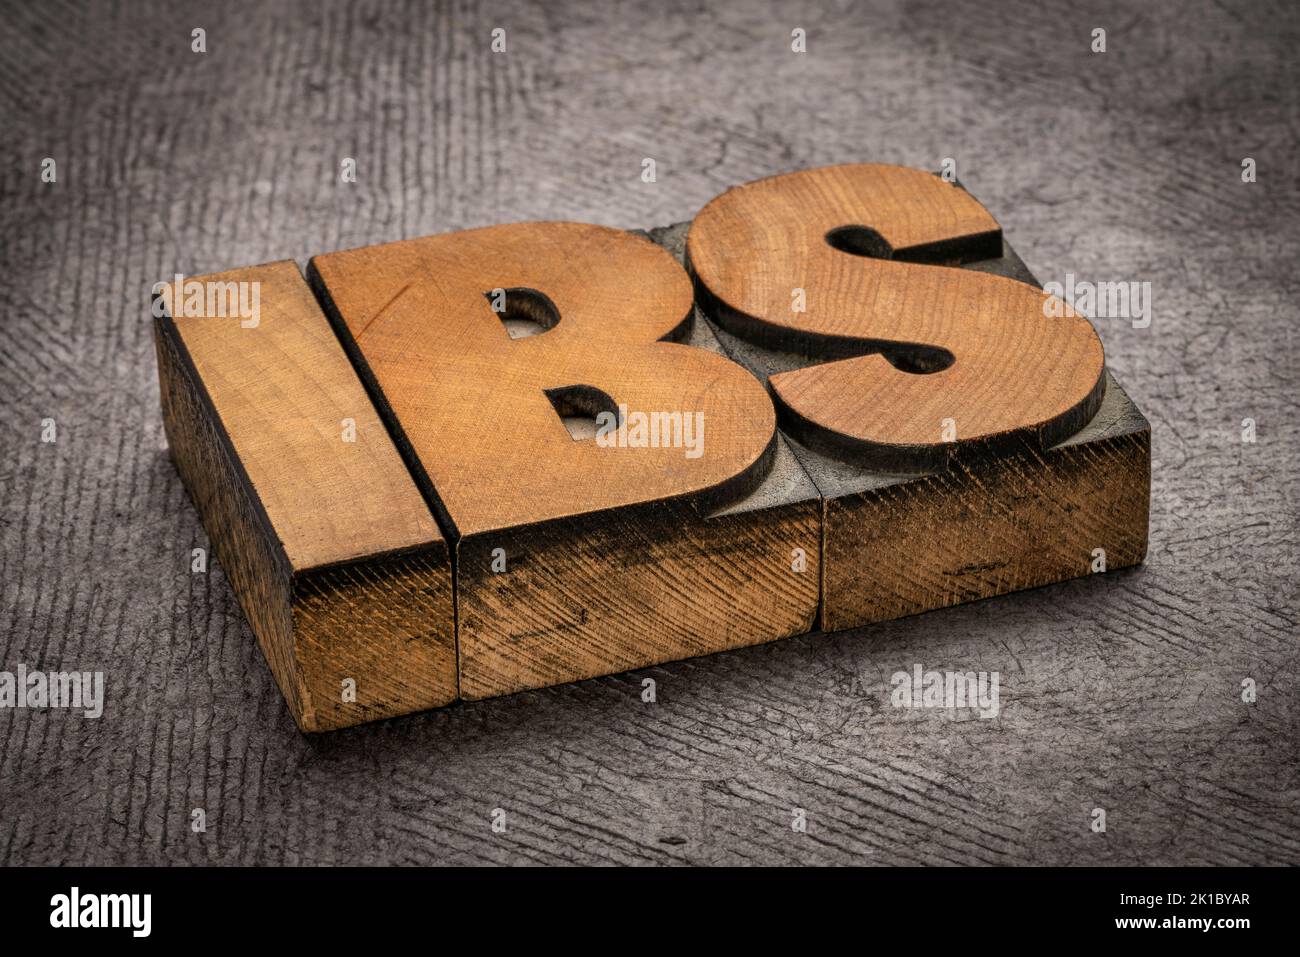 IBS - syndrome de l'intestin irritable, mot abstrait dans le type de bois de typographie vintage, la digestion et la santé intestinale concept Banque D'Images